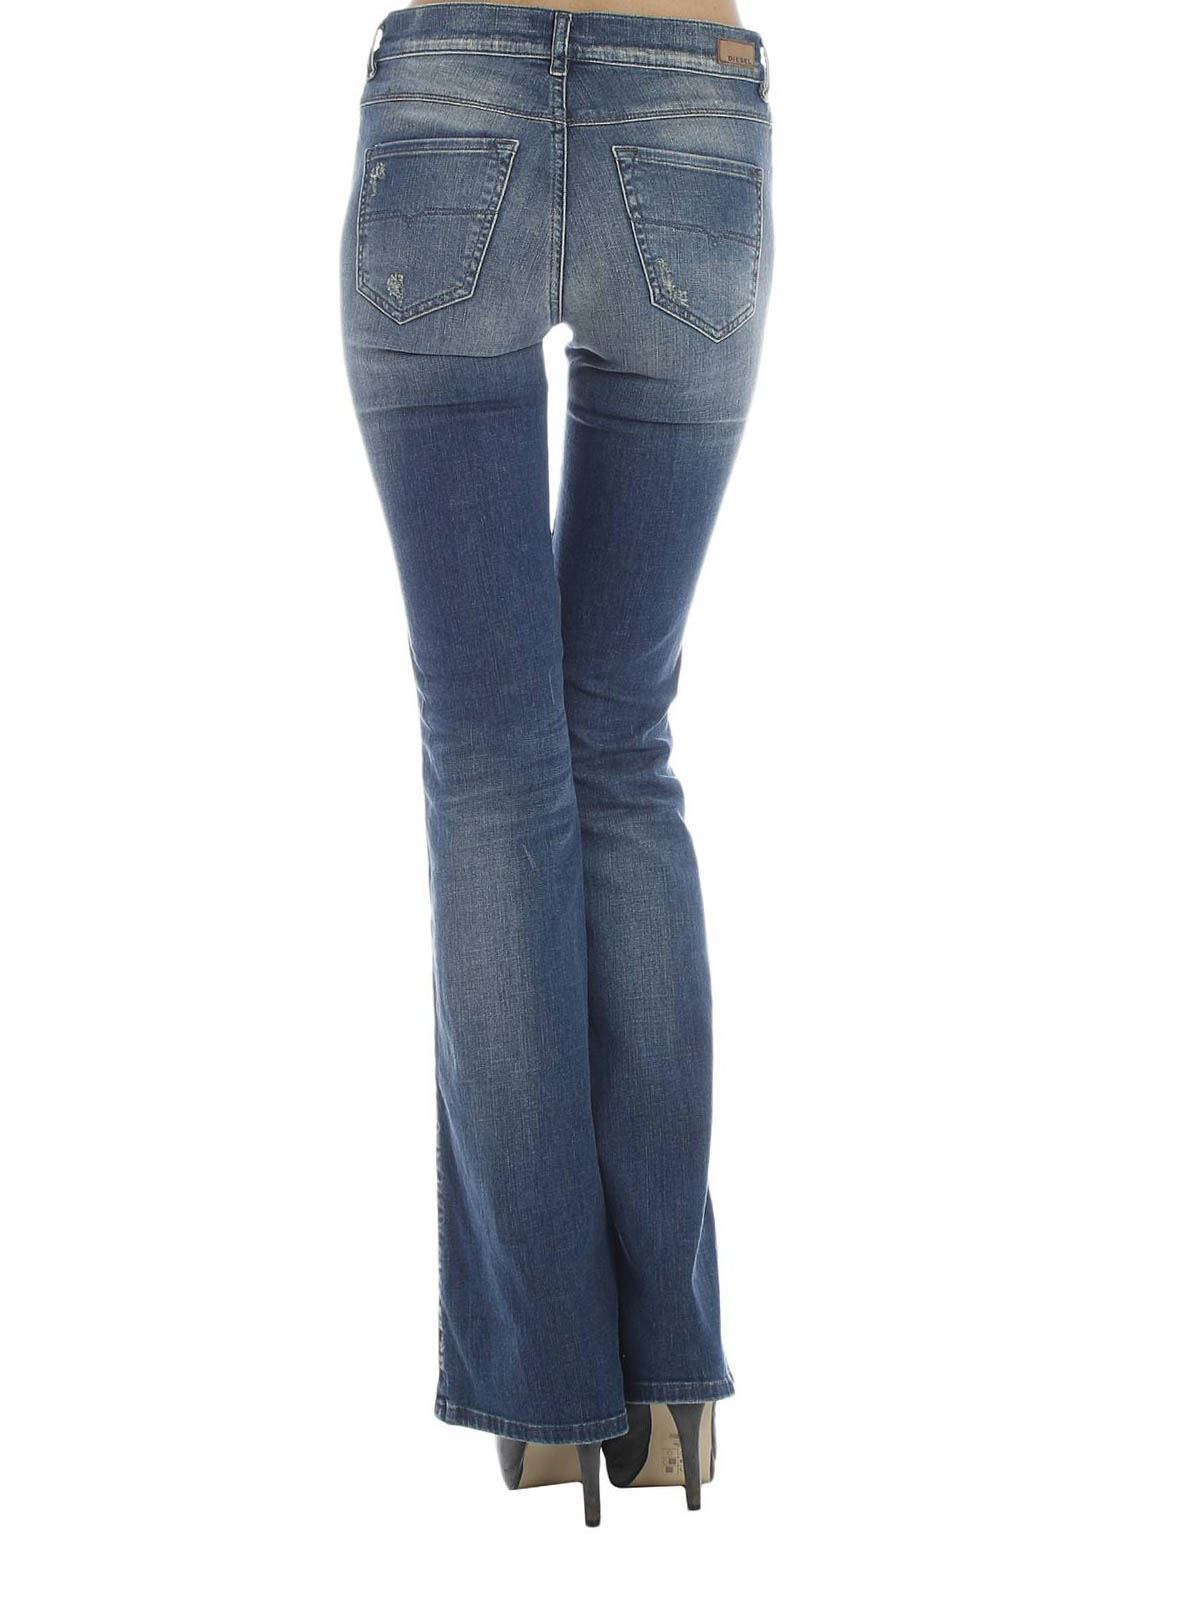 vuist verdrievoudigen Draak Flared jeans Diesel - Sandy flared jeans - 00SNY484BI01 | iKRIX.com